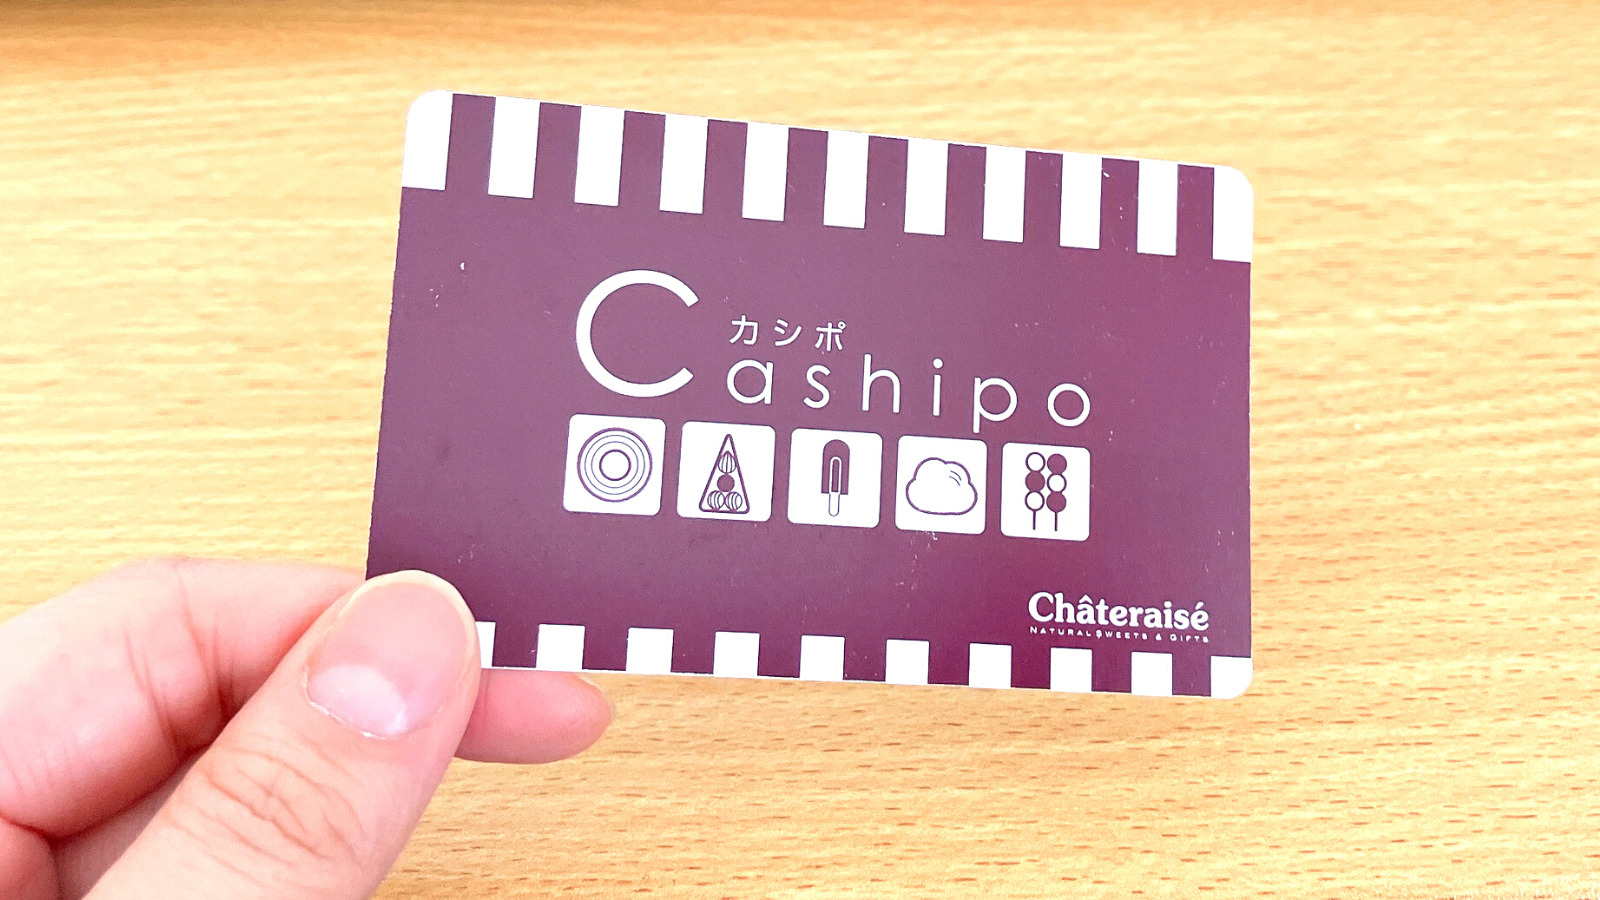 シャトレーゼのポイントカード「カシポ」